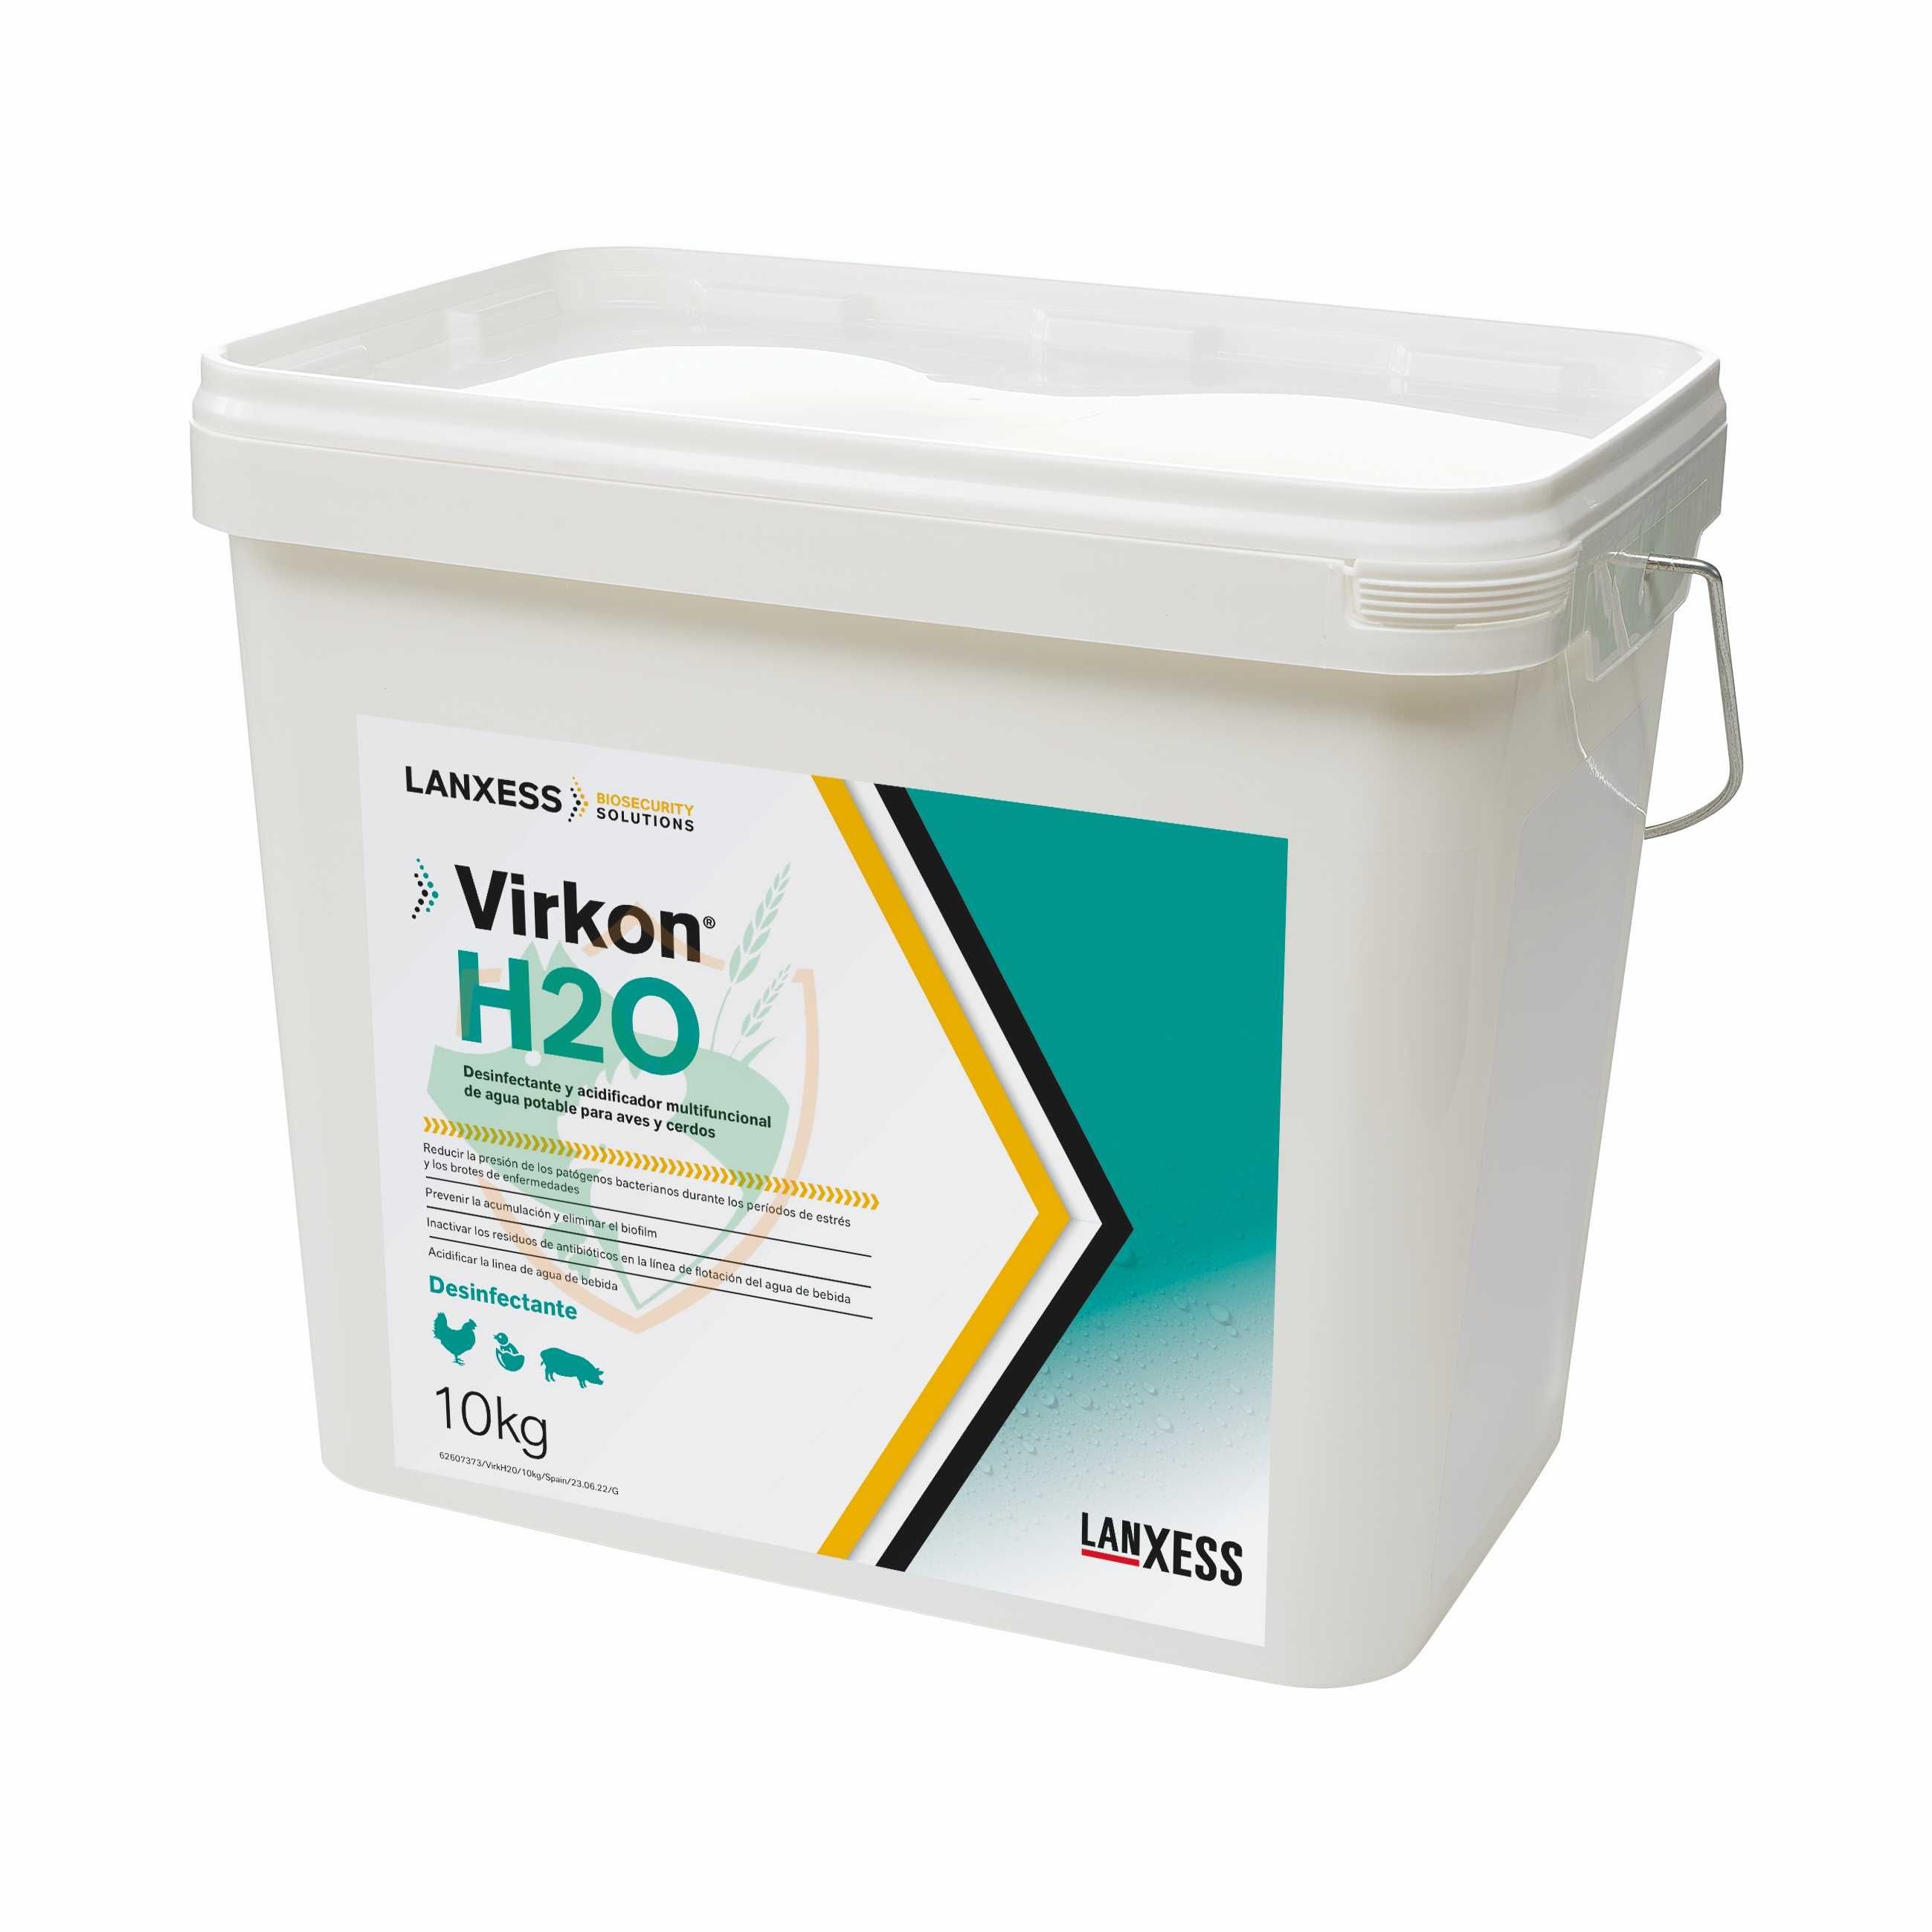 Virkon H2O - 10kg – dezynfekcja linii pojenia, drób, trzoda chlewna